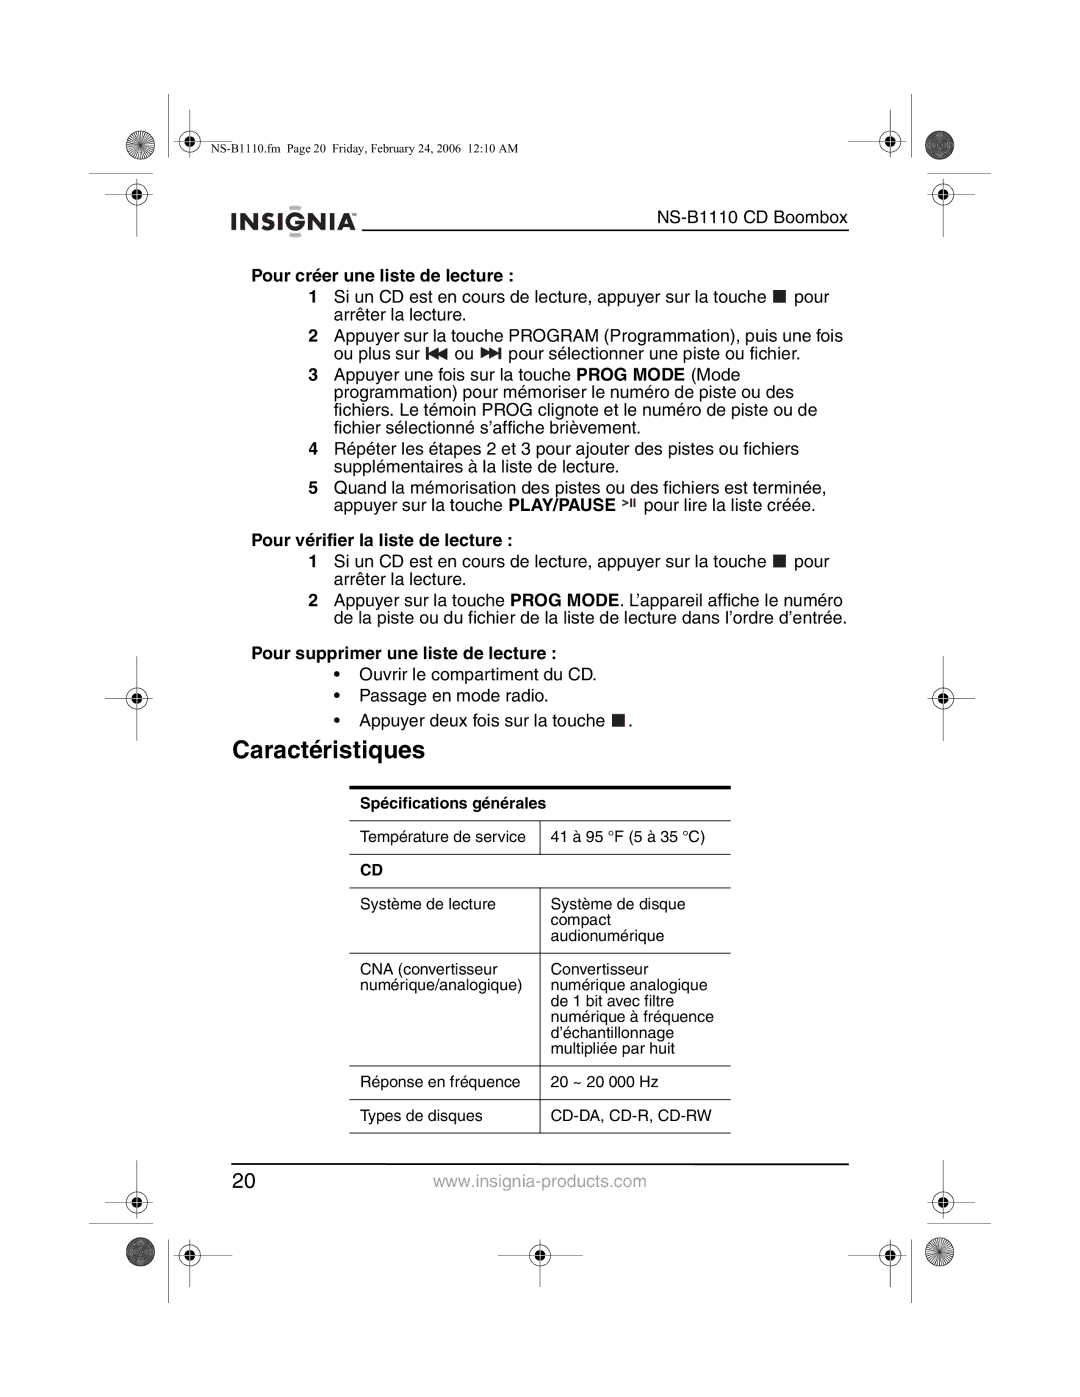 Insignia NS-B1110 manual Caractéristiques, Pour créer une liste de lecture, Pour vérifier la liste de lecture 